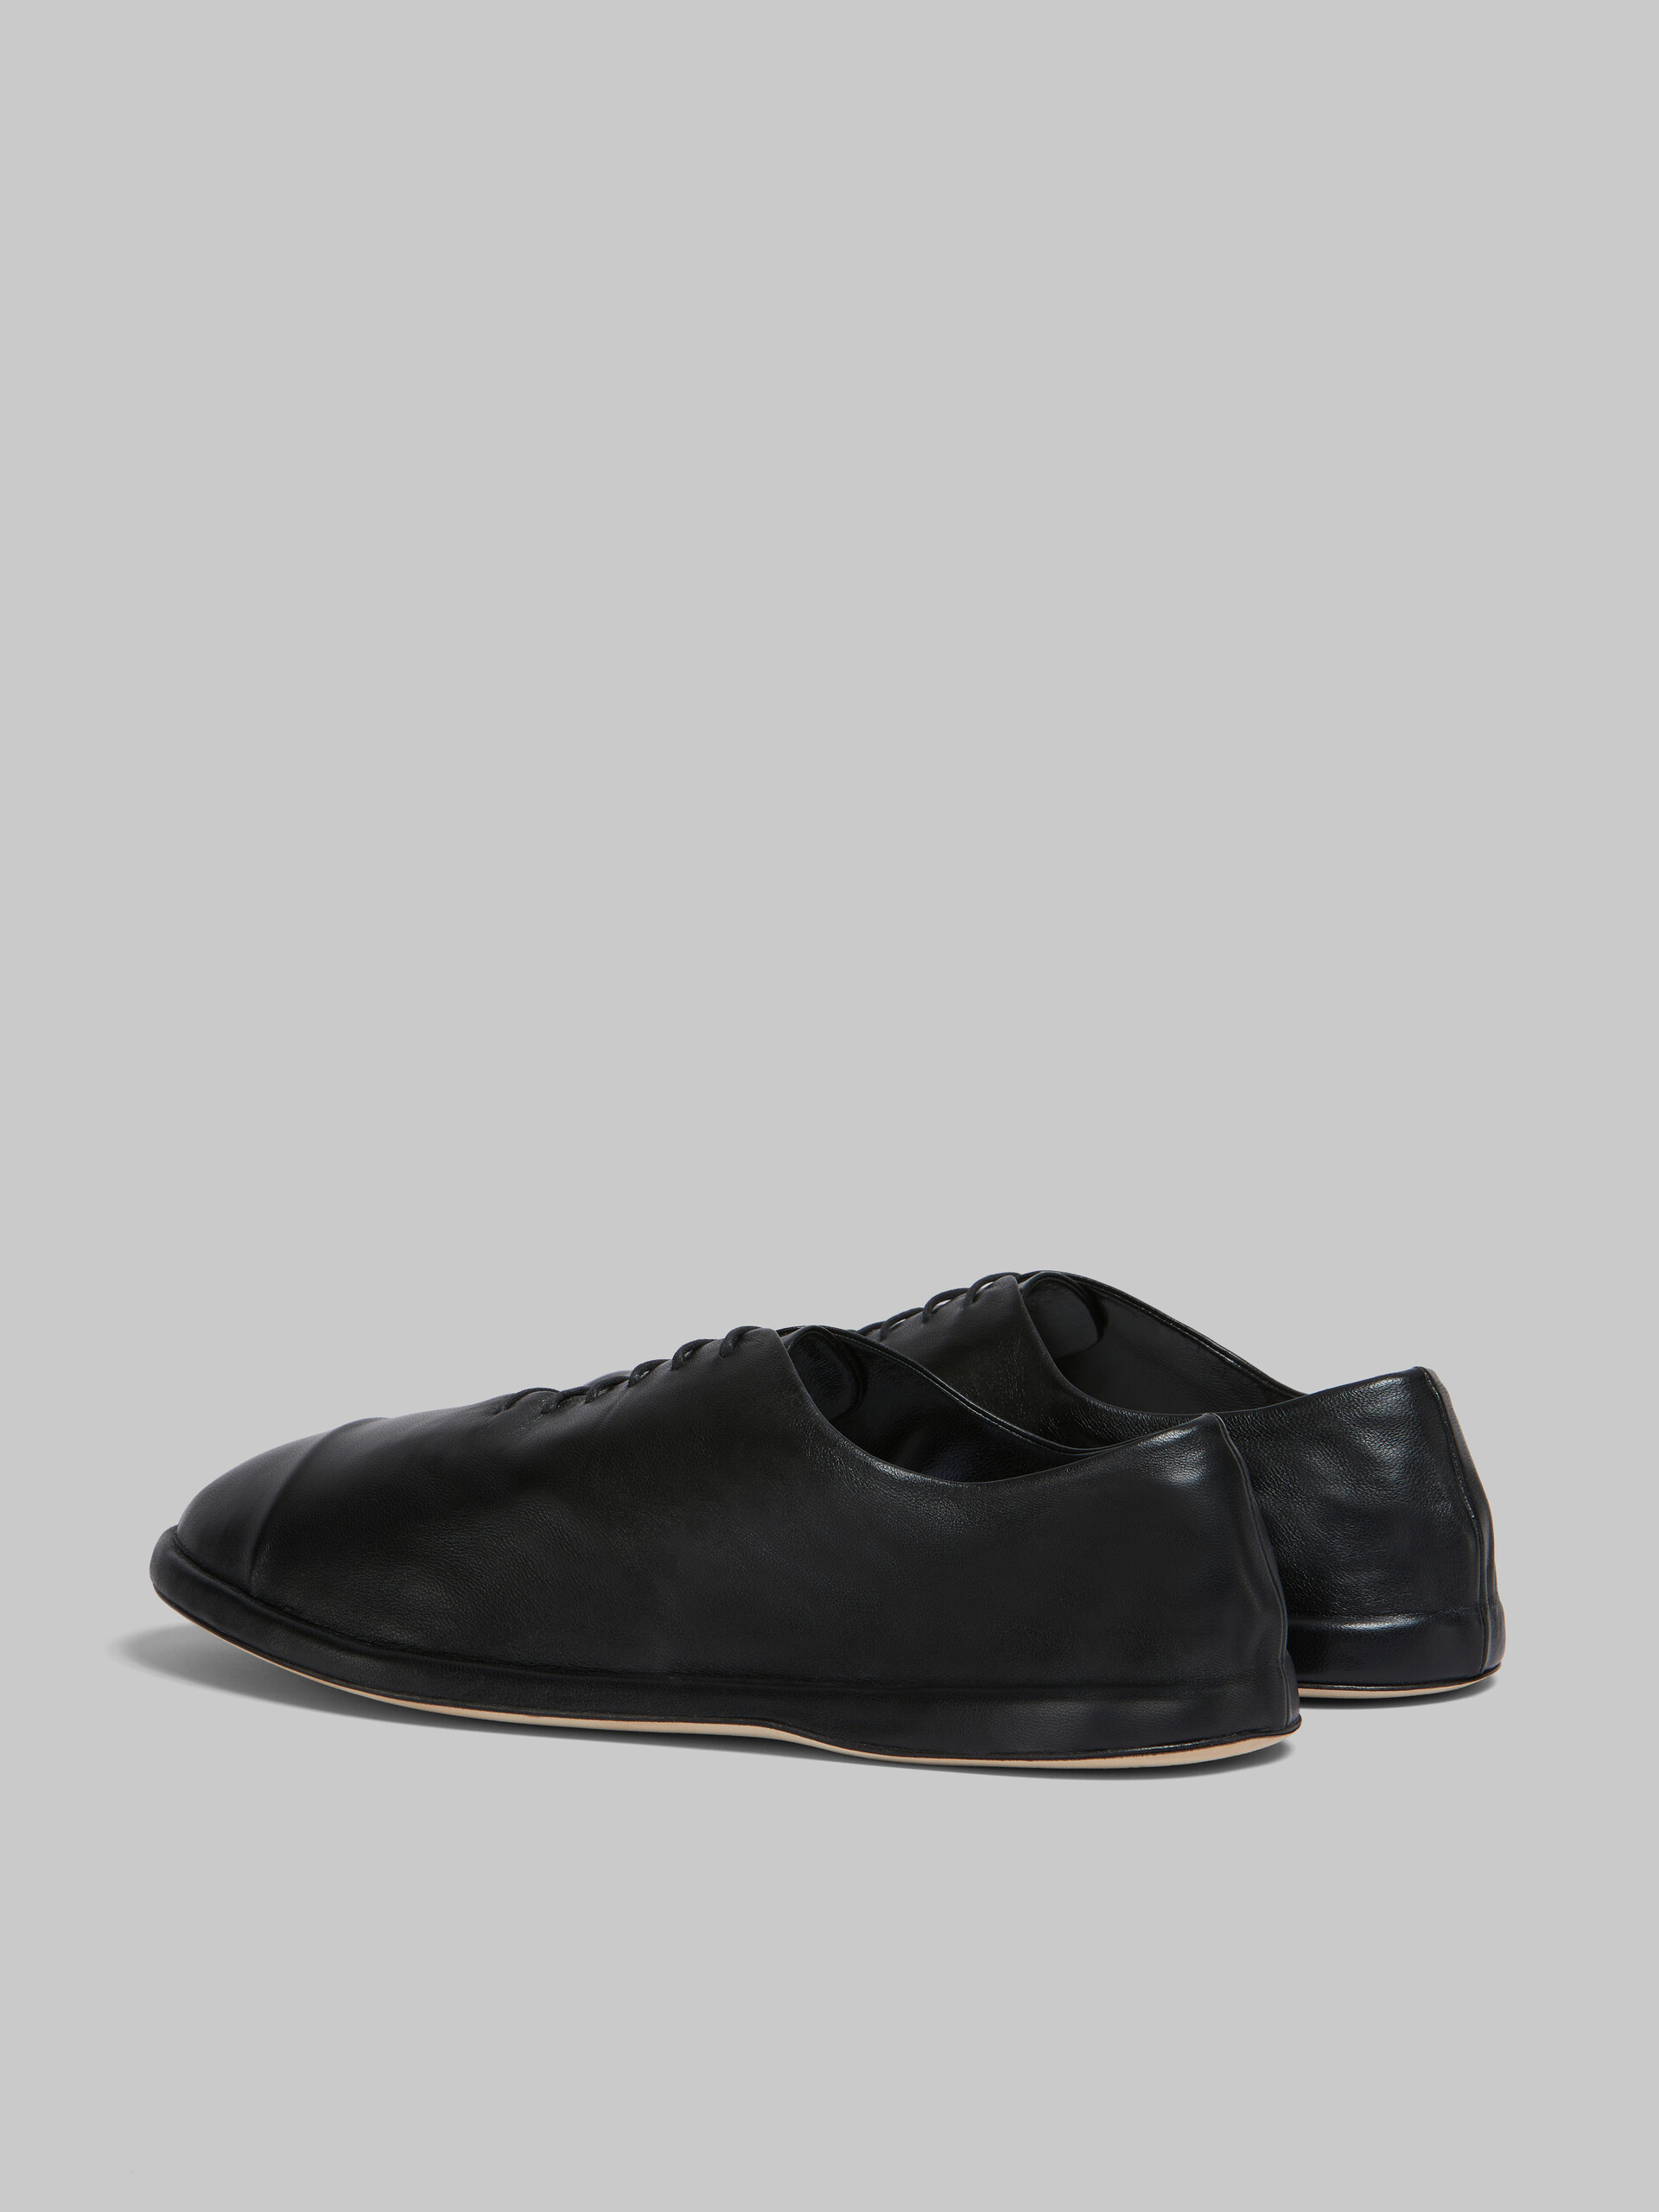 Zapatillas sin costuras de piel de napa gris - Zapatos con cordones - Image 3